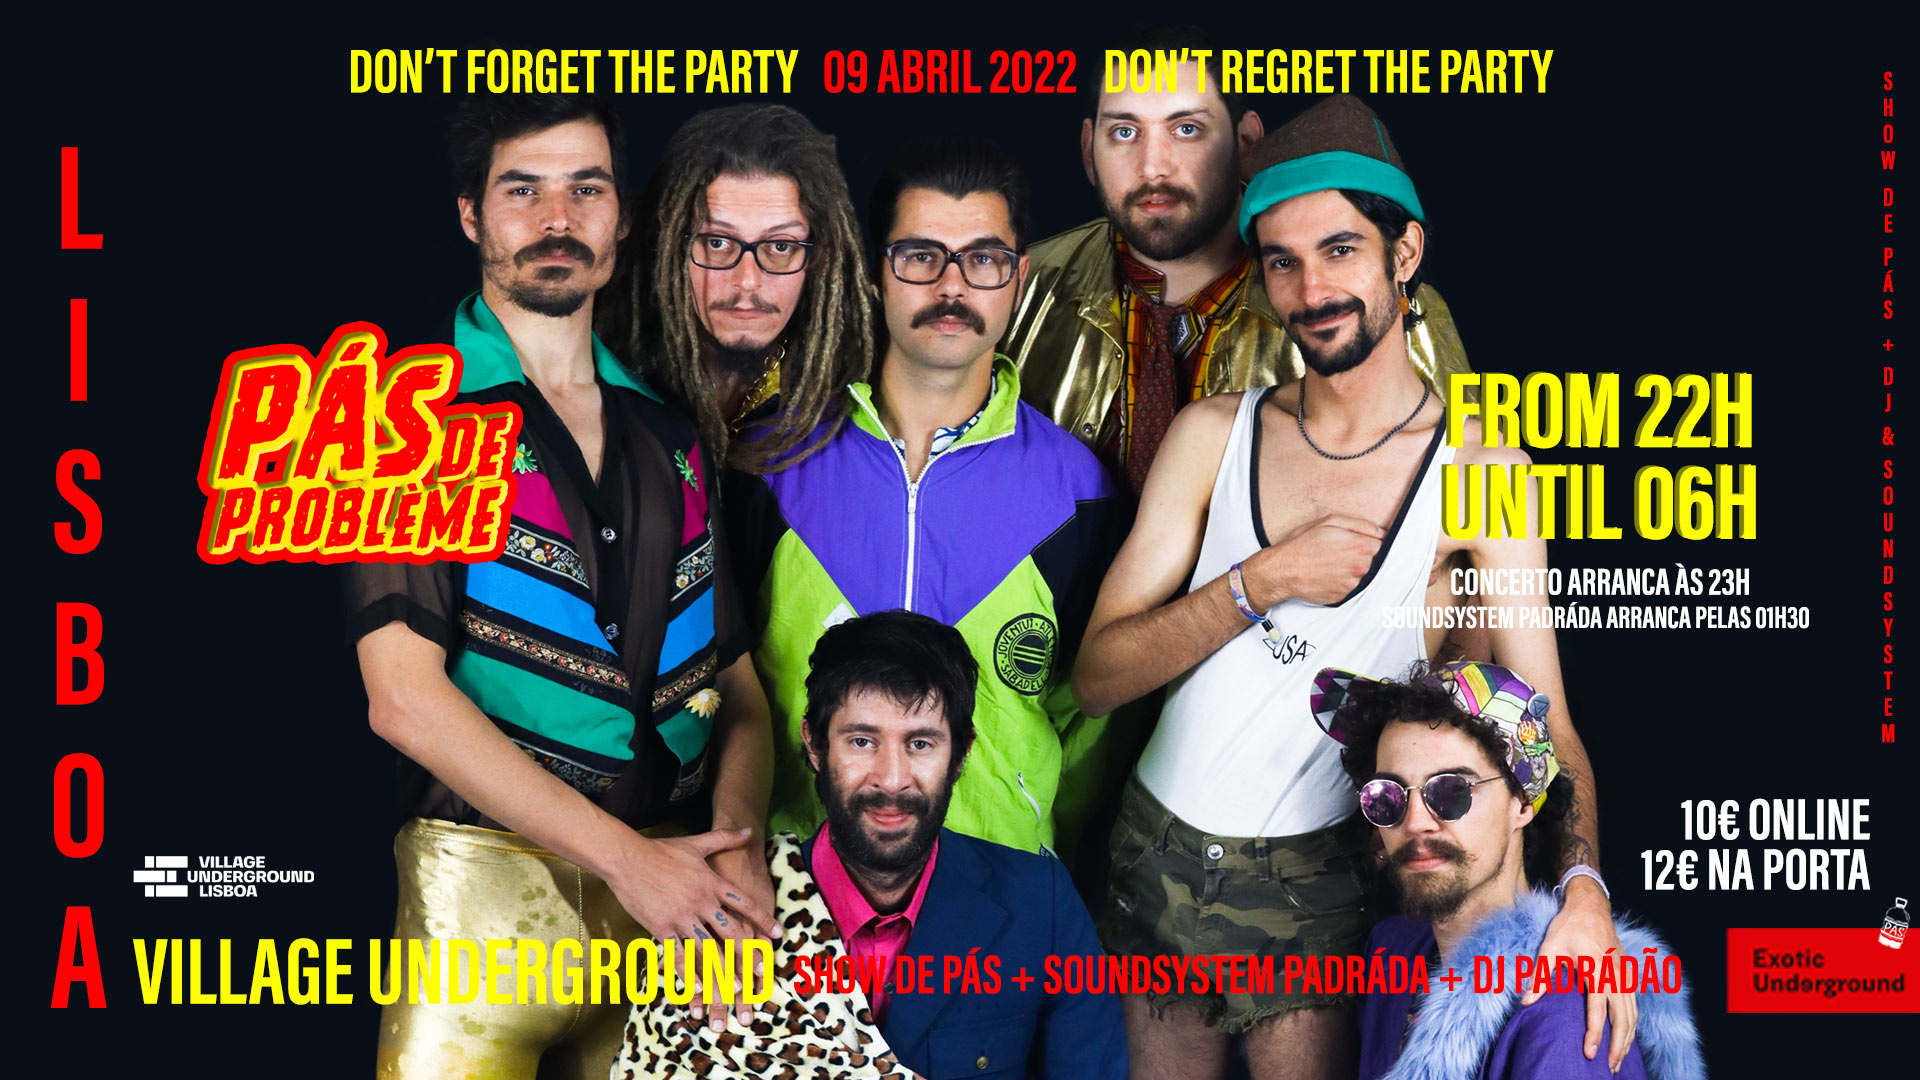 PÁS DE PROBLÈME: Don't forget the party, don't regret the party!